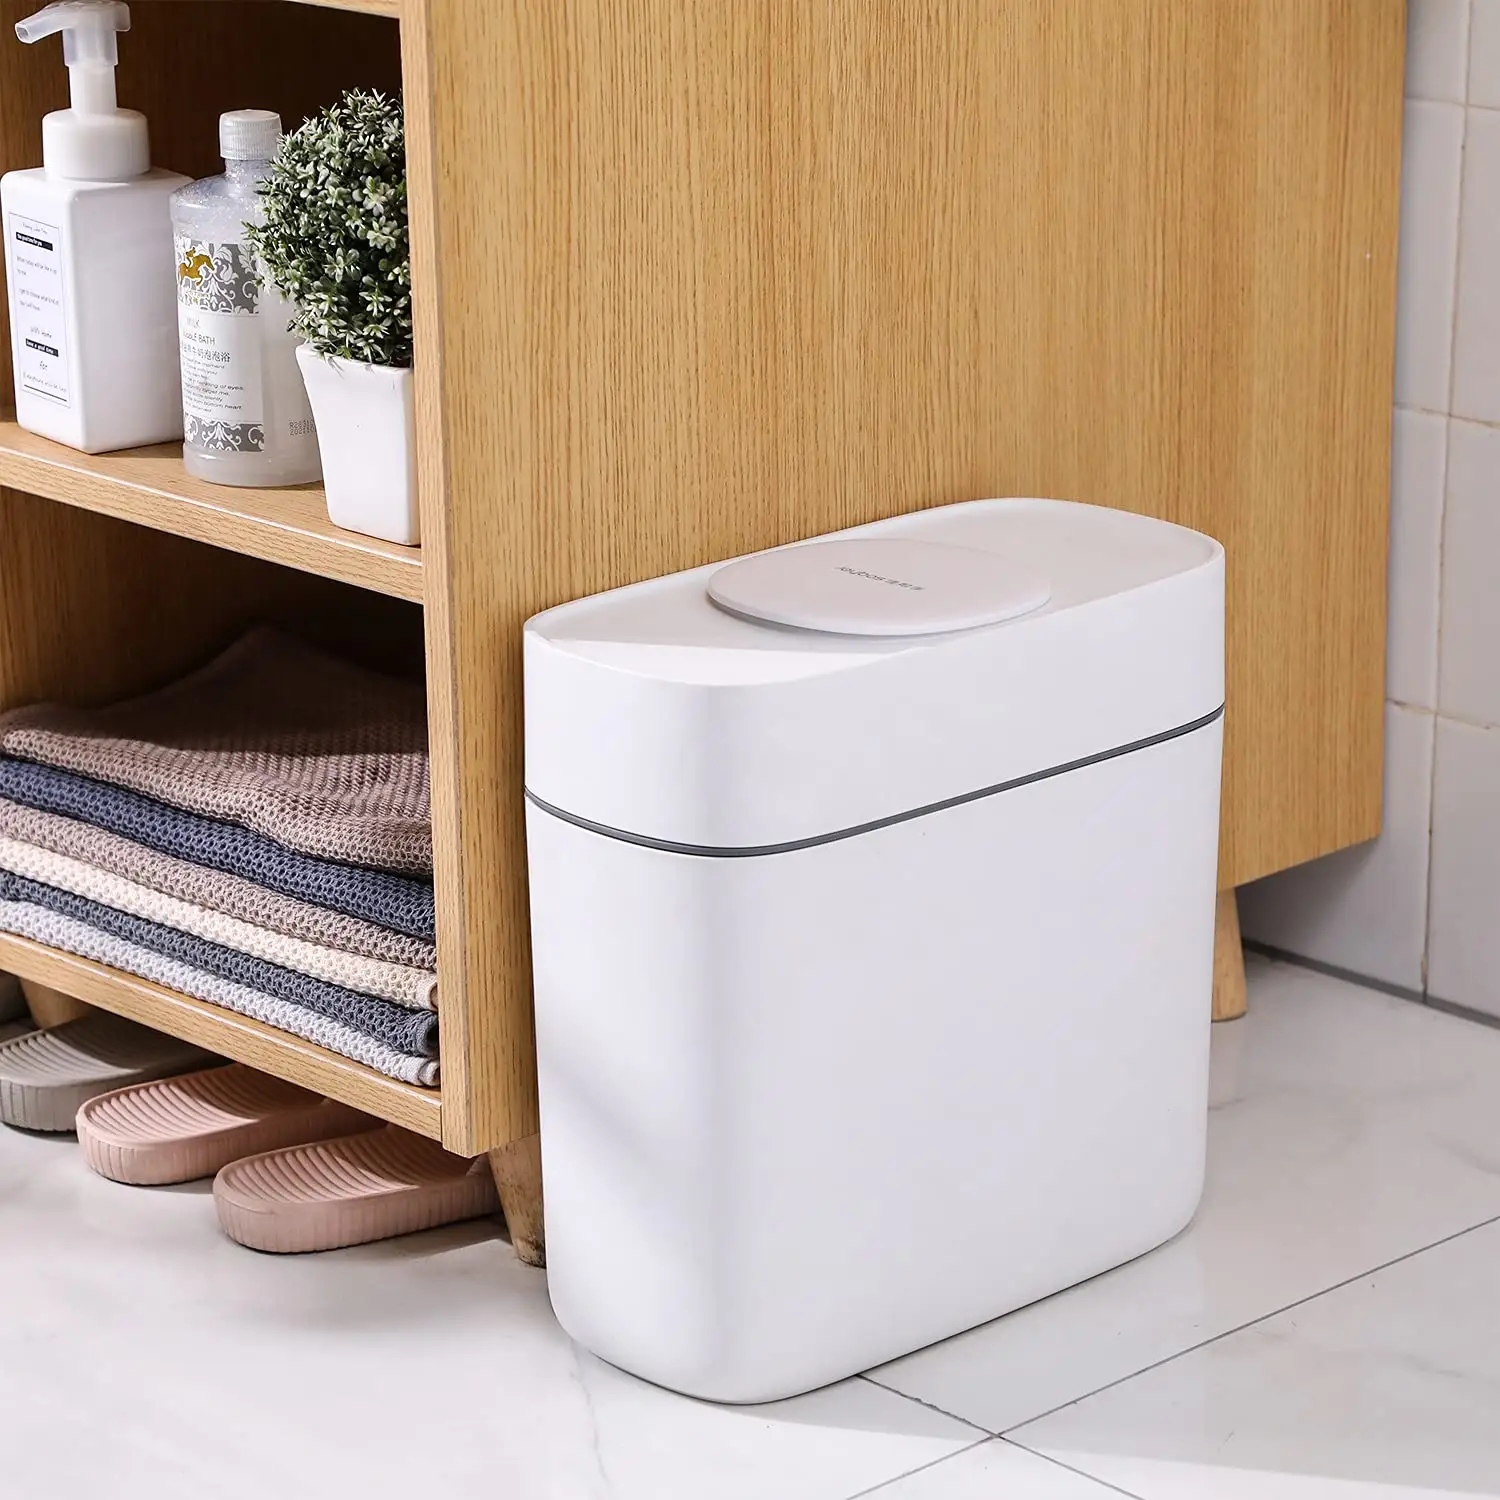 JOYBOS Fábrica de auto-desenvolvido Fácil botão de imprensa, abrir facilmente adequado para banheiro cozinha sala quarto lata de lixo